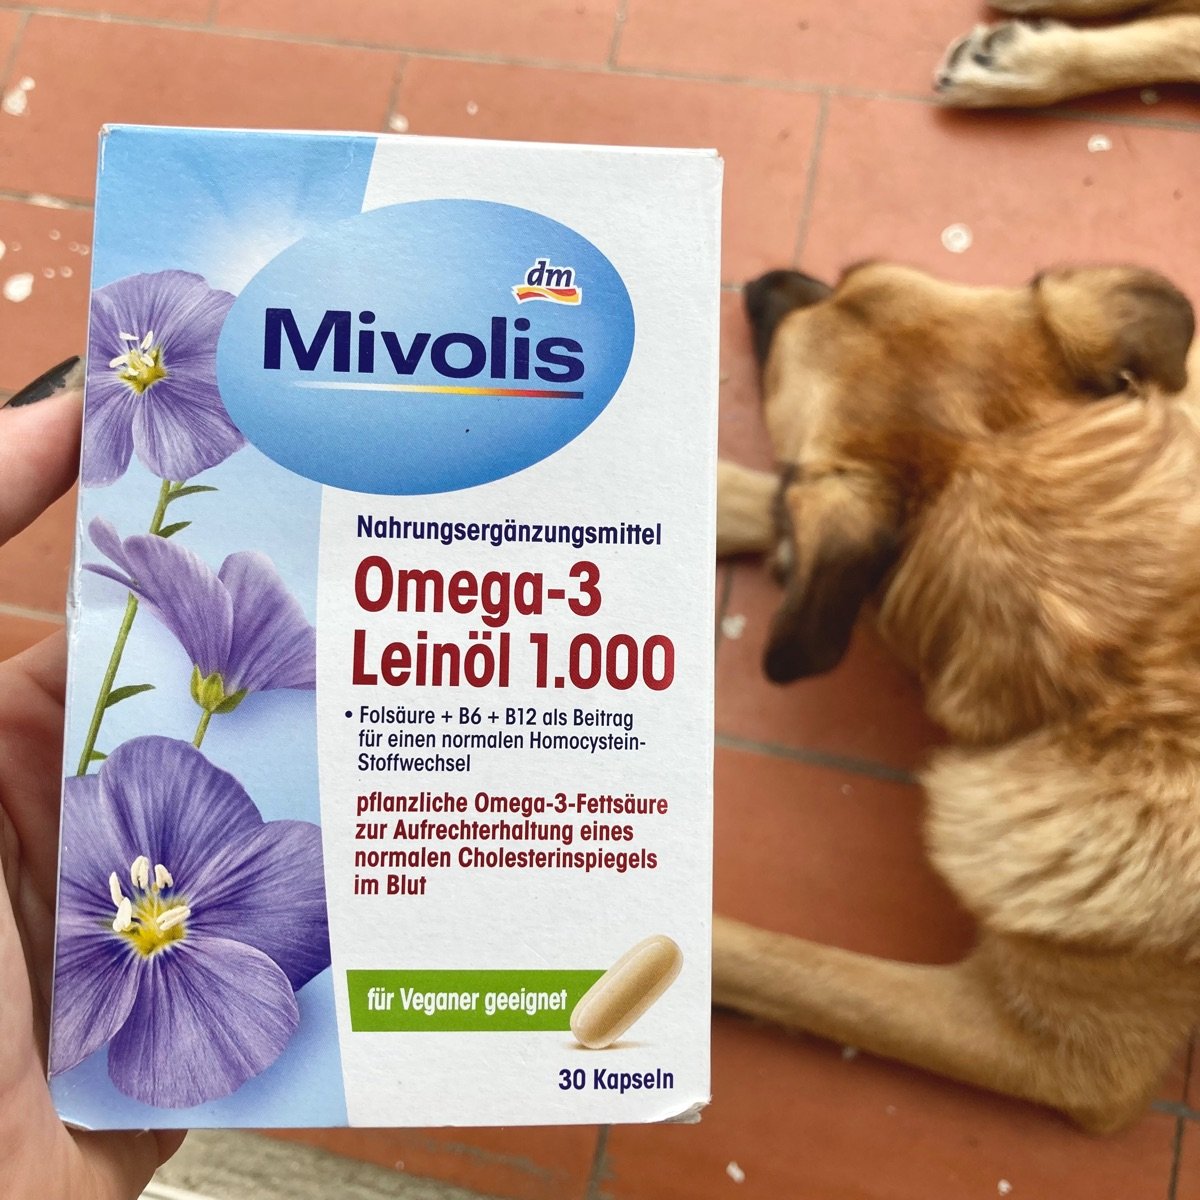 Mivolis omega 3 Reviews | abillion